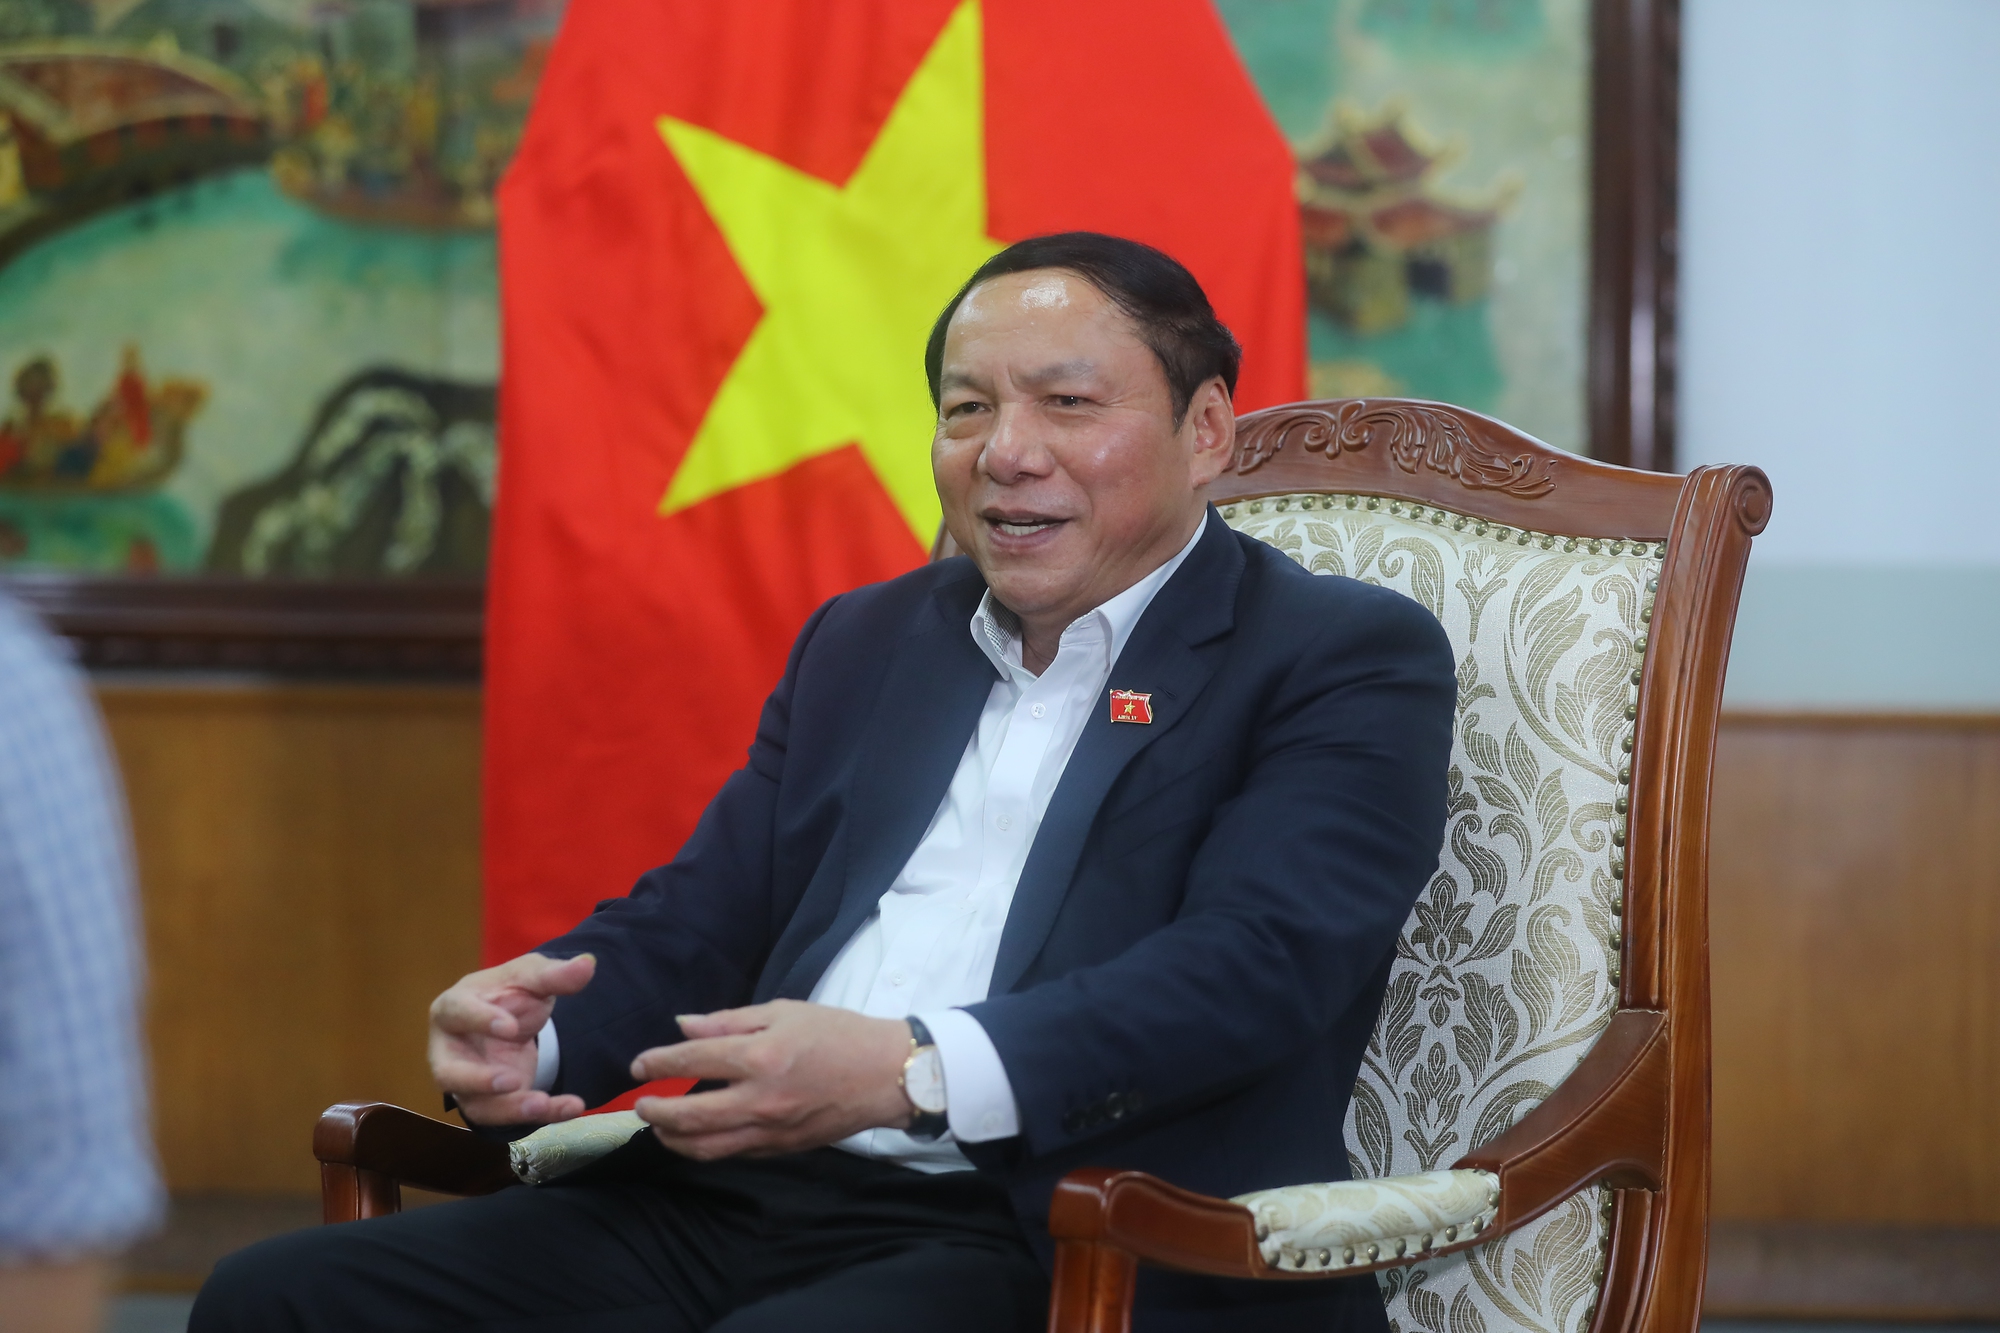 Bộ trưởng Nguyễn Văn Hùng: Cầu thị, tiếp thu mọi ý kiến để nỗ lực hoàn thiện dự thảo Chương trình MTQG về phát triển văn hoá